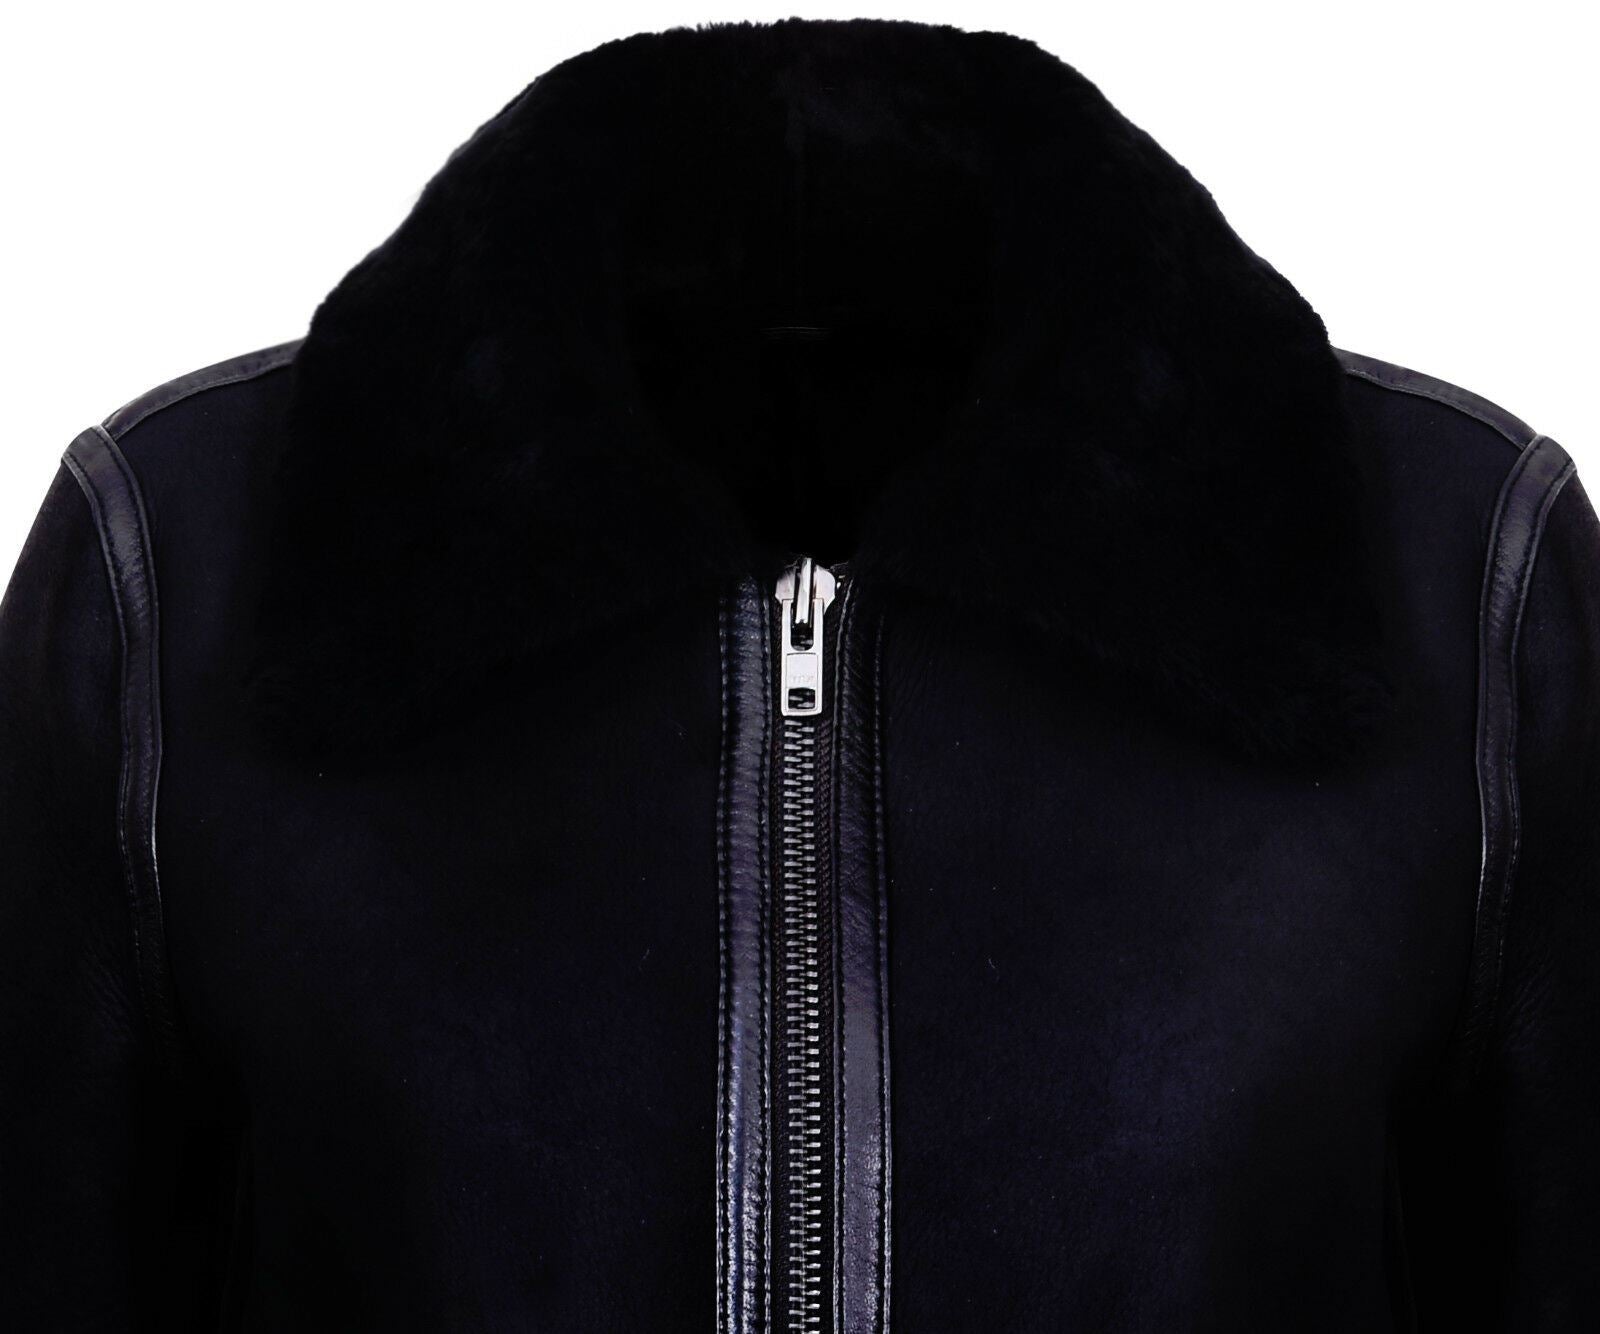 Womens B3 Sheepskin Black Leather Jacket-Padiham - Upperclass Fashions 